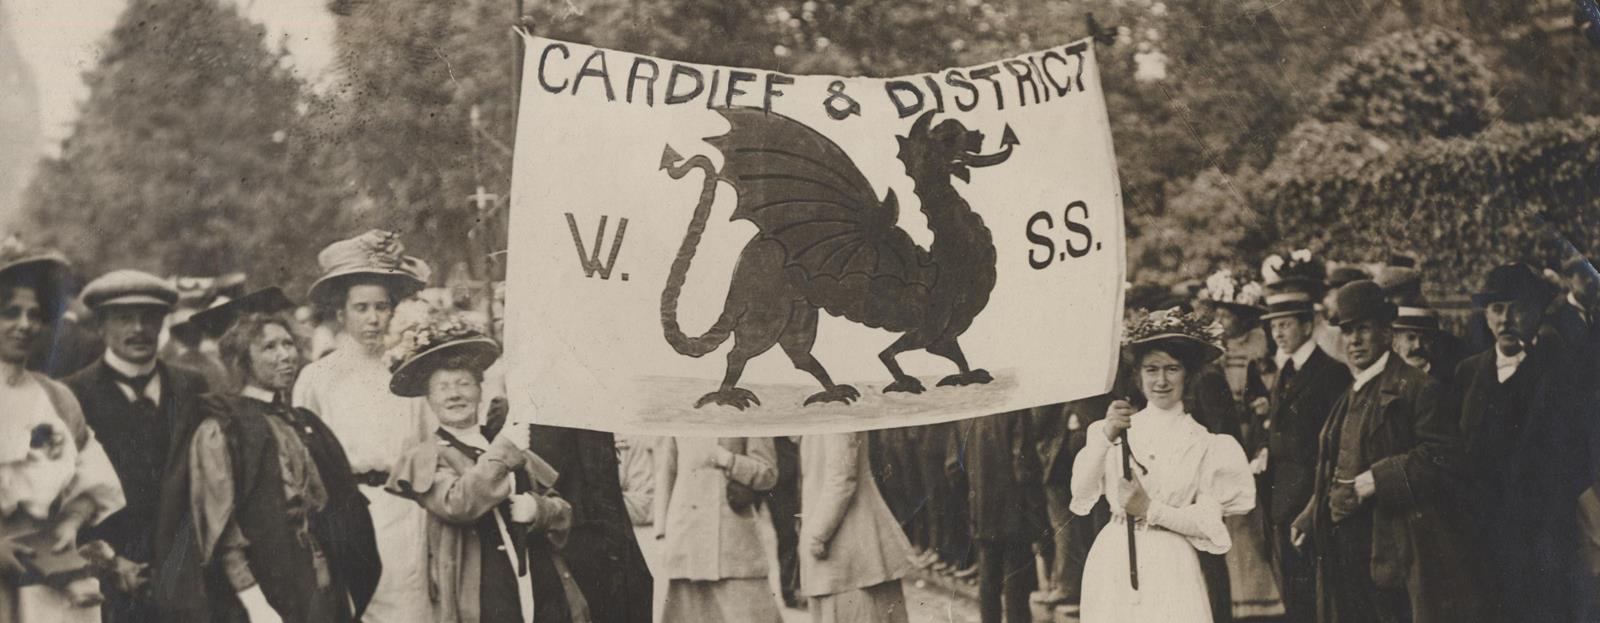 Gorymdaith Fawr y Swffragetiaid, Llundain. ©Media Wales